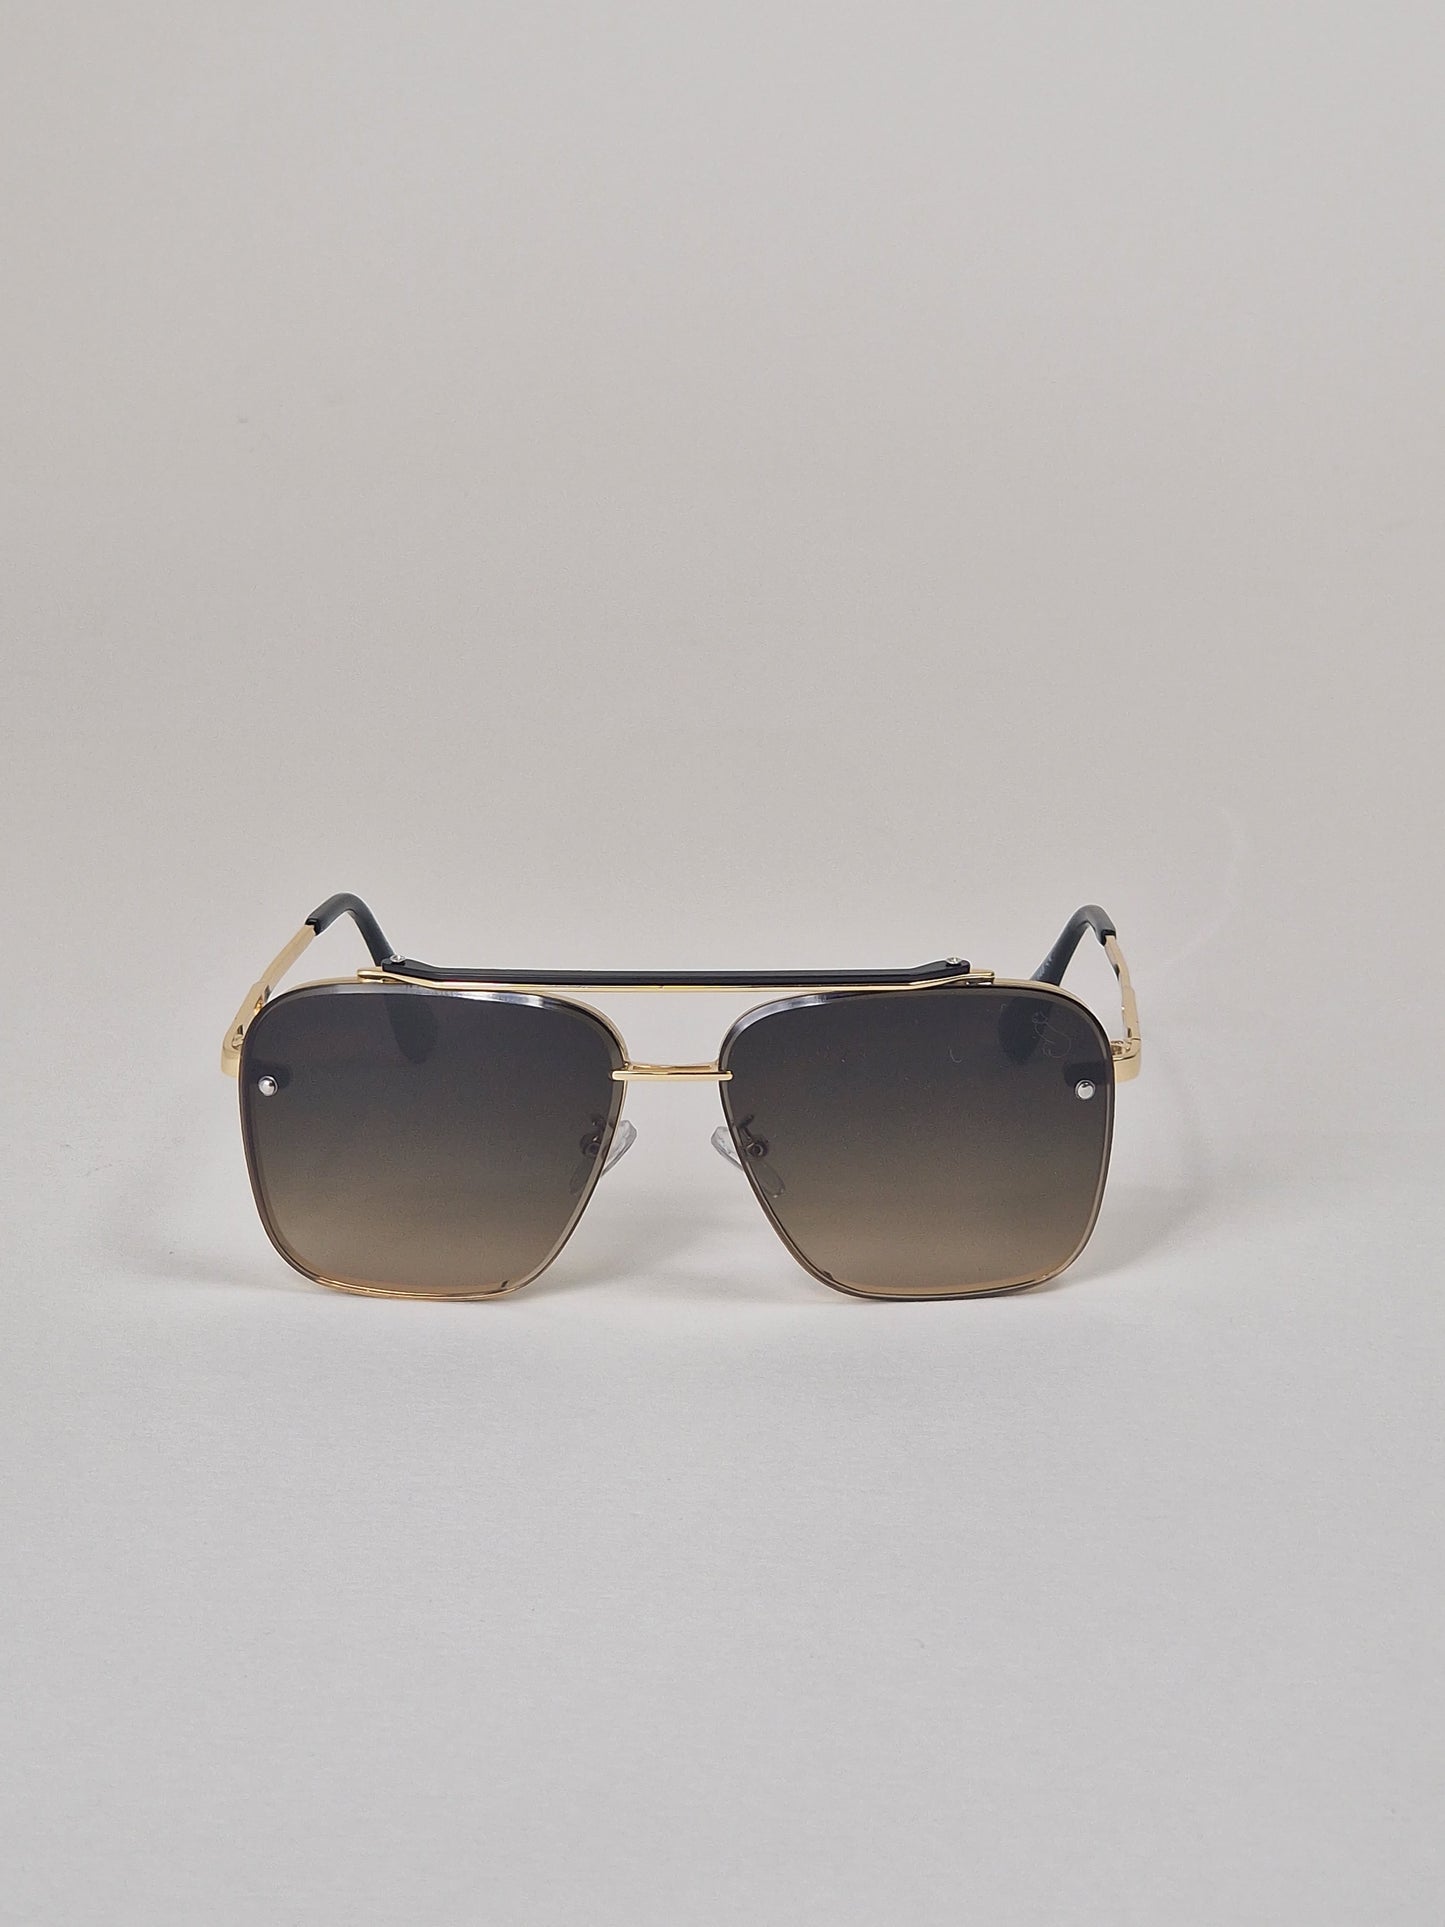 Solglasögon, modell 1 - Svart/brun tintade.